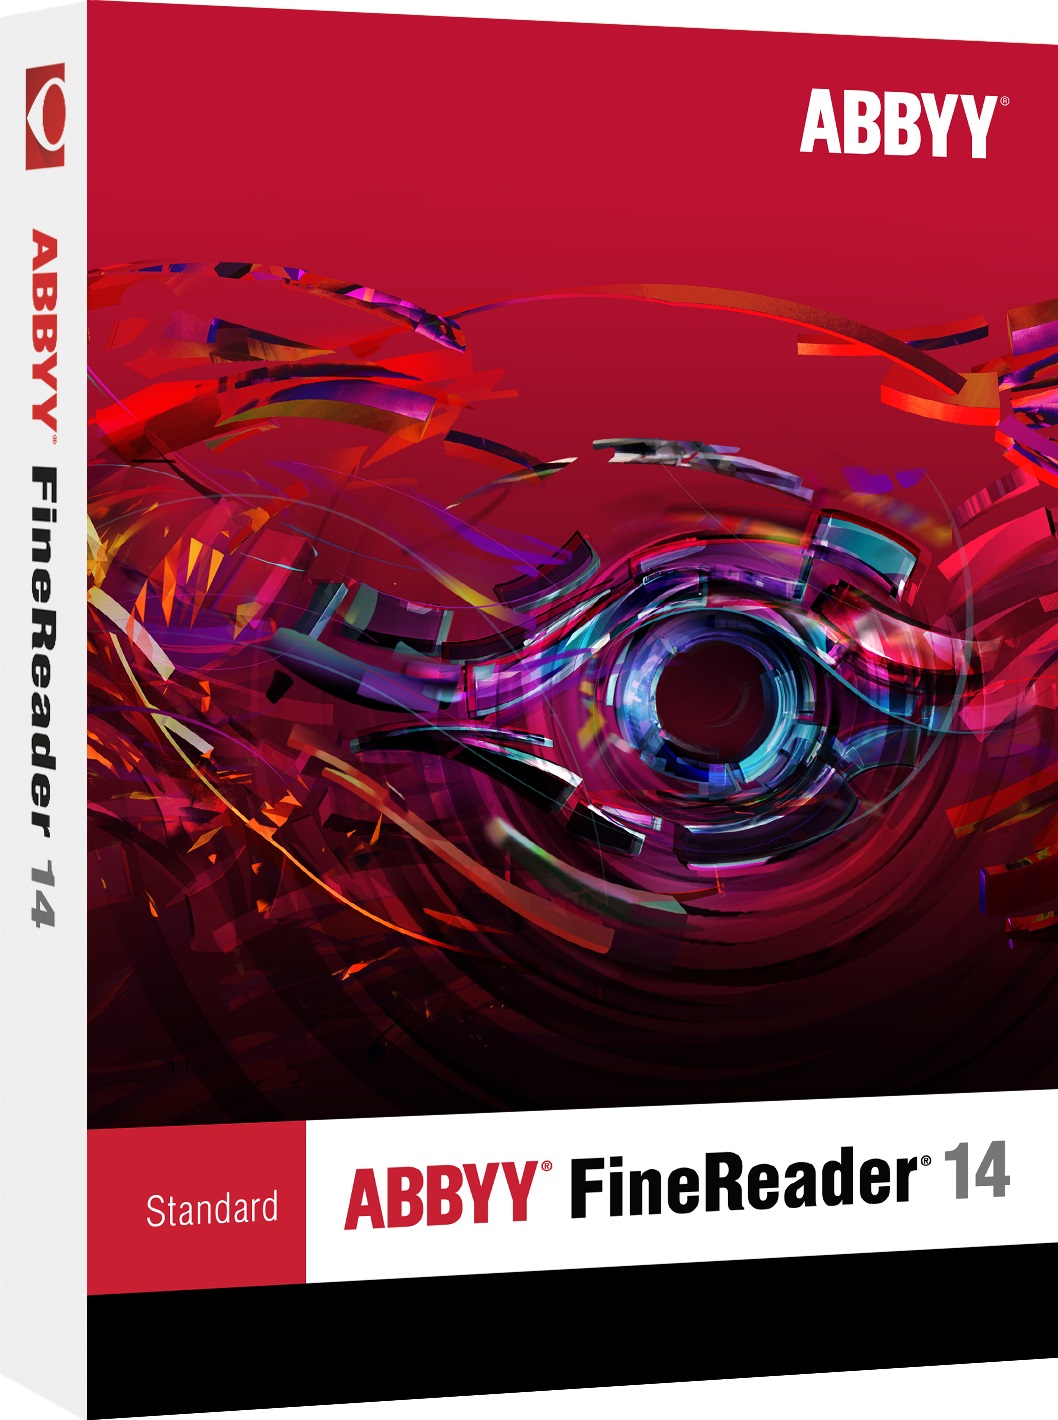 abbyy-finereader14-box-l-rgb.jpg